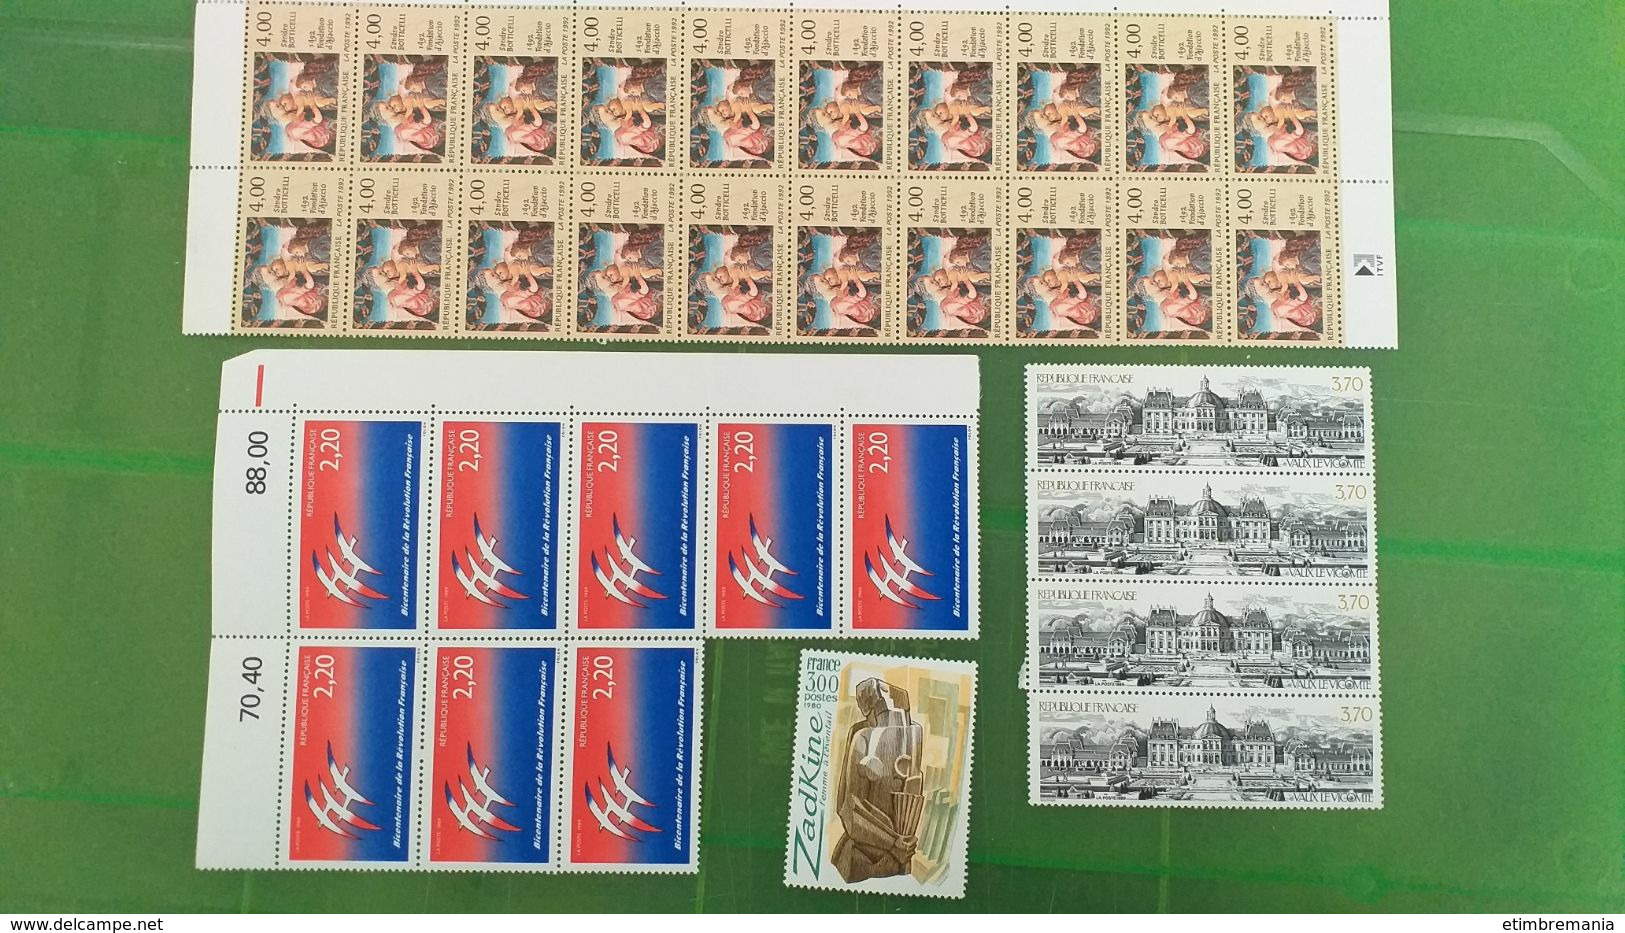 LOT N° e 547  FRANCE neufs xx un lot de timbres moderne pour le courrier ou la collection faciale 586 fr soit 89 €